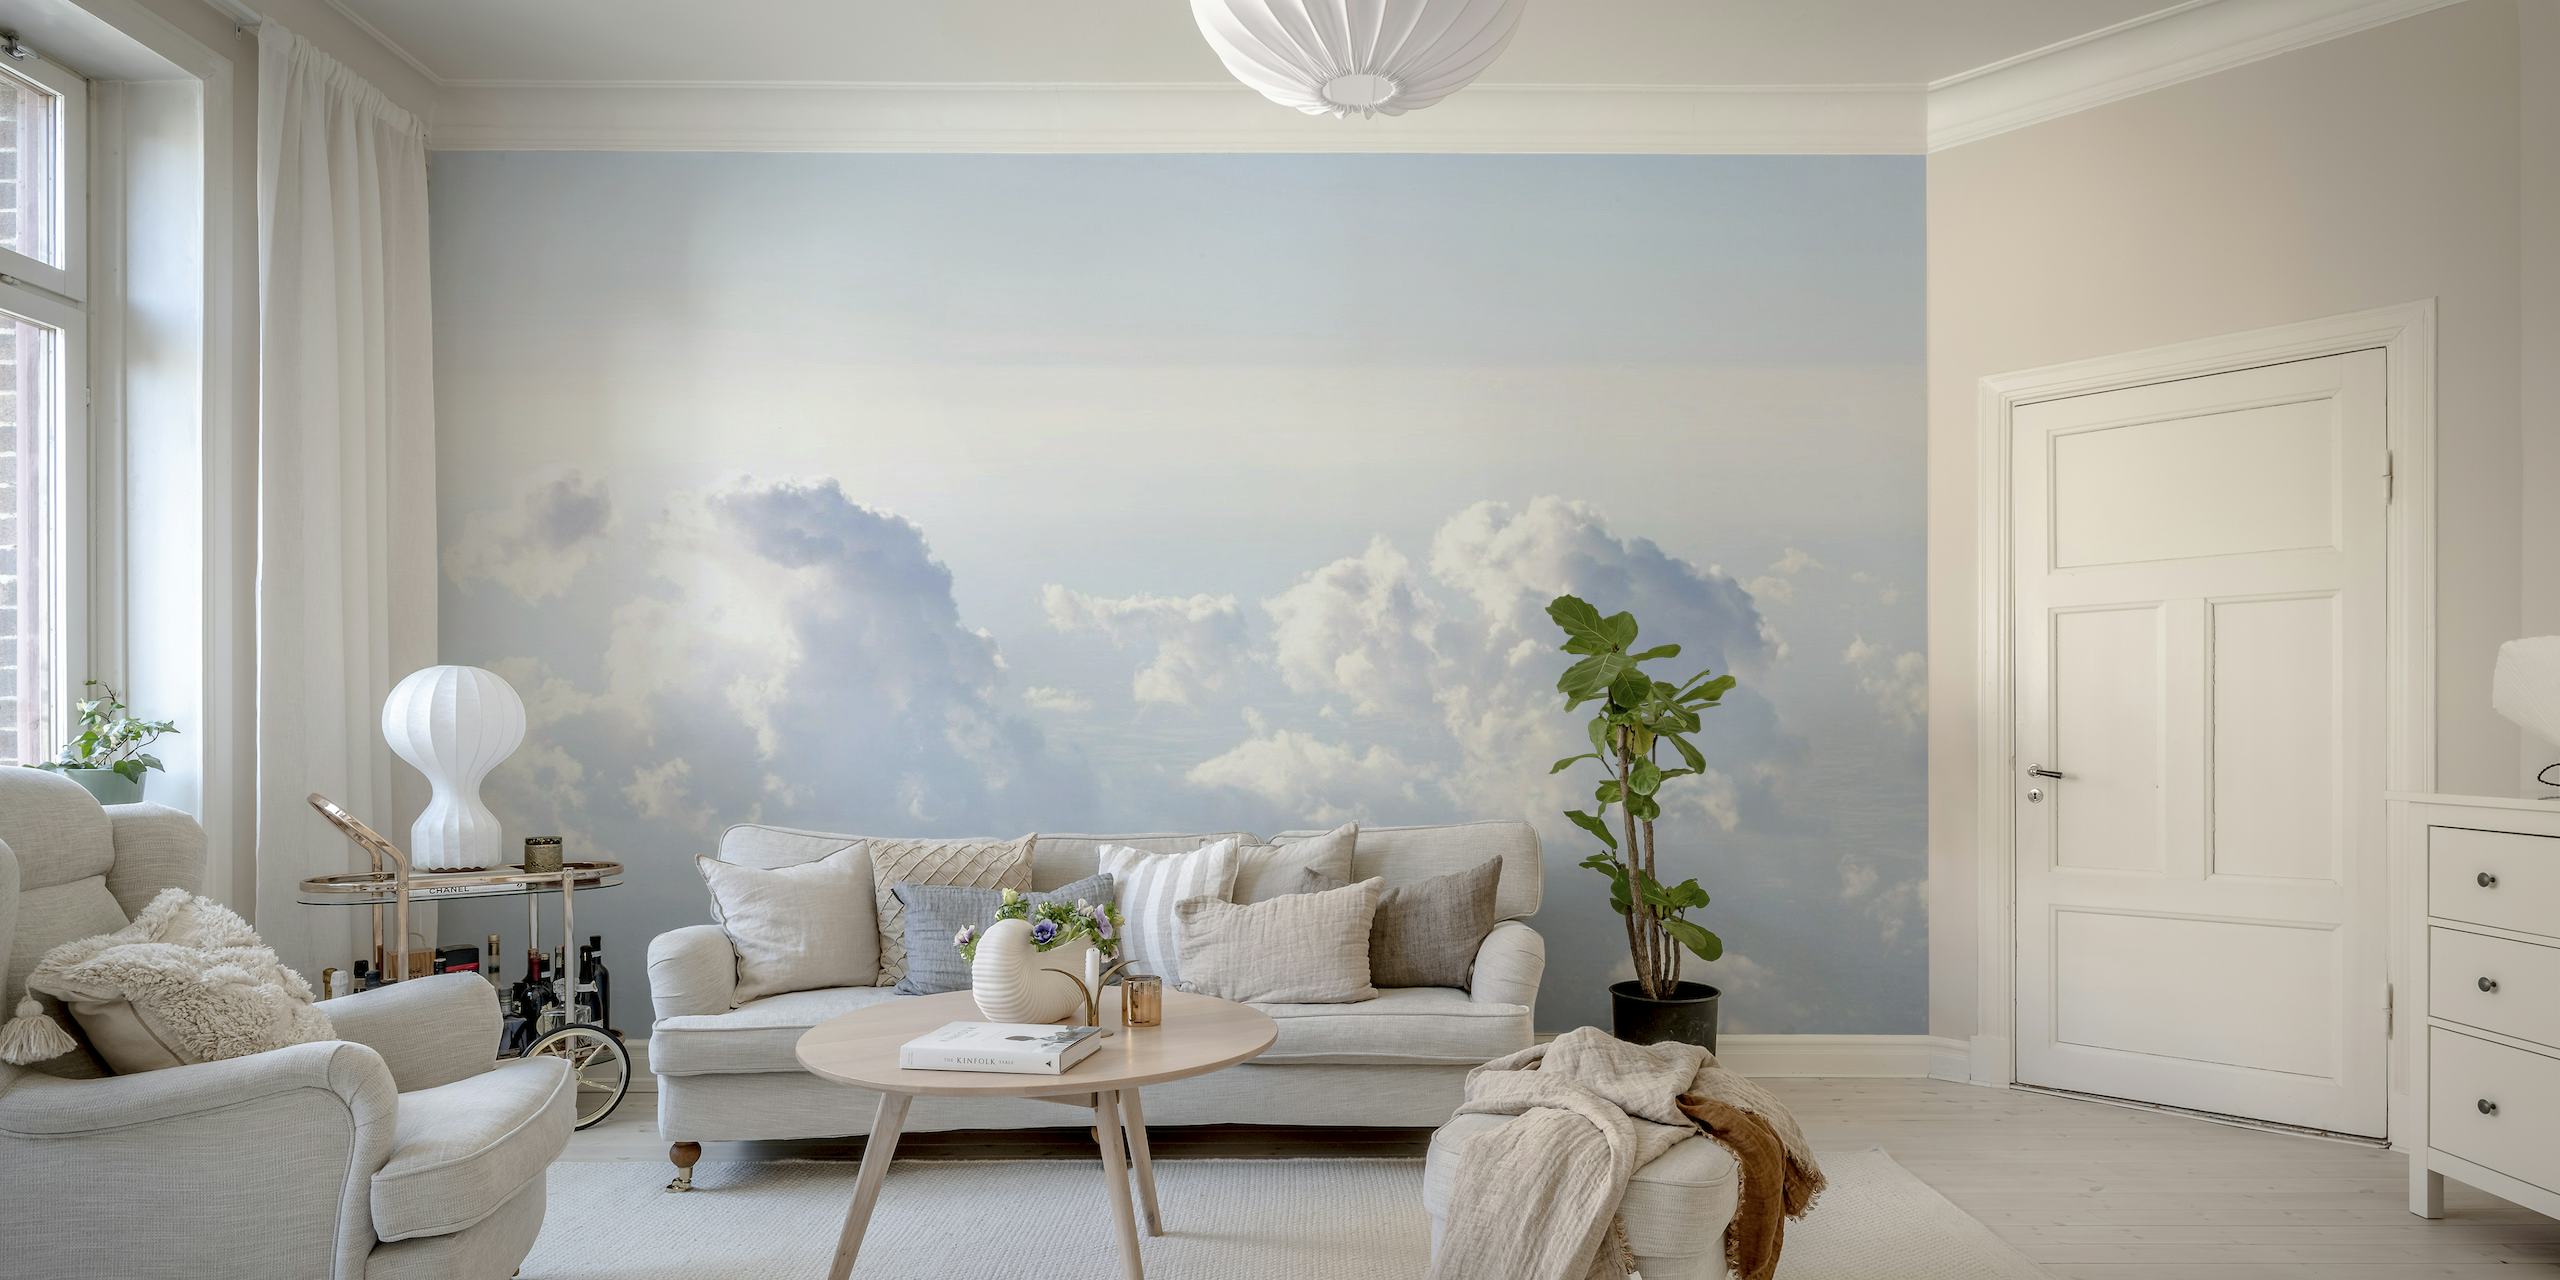 Um mural de parede de um céu sereno e cheio de nuvens com tons suaves de azul